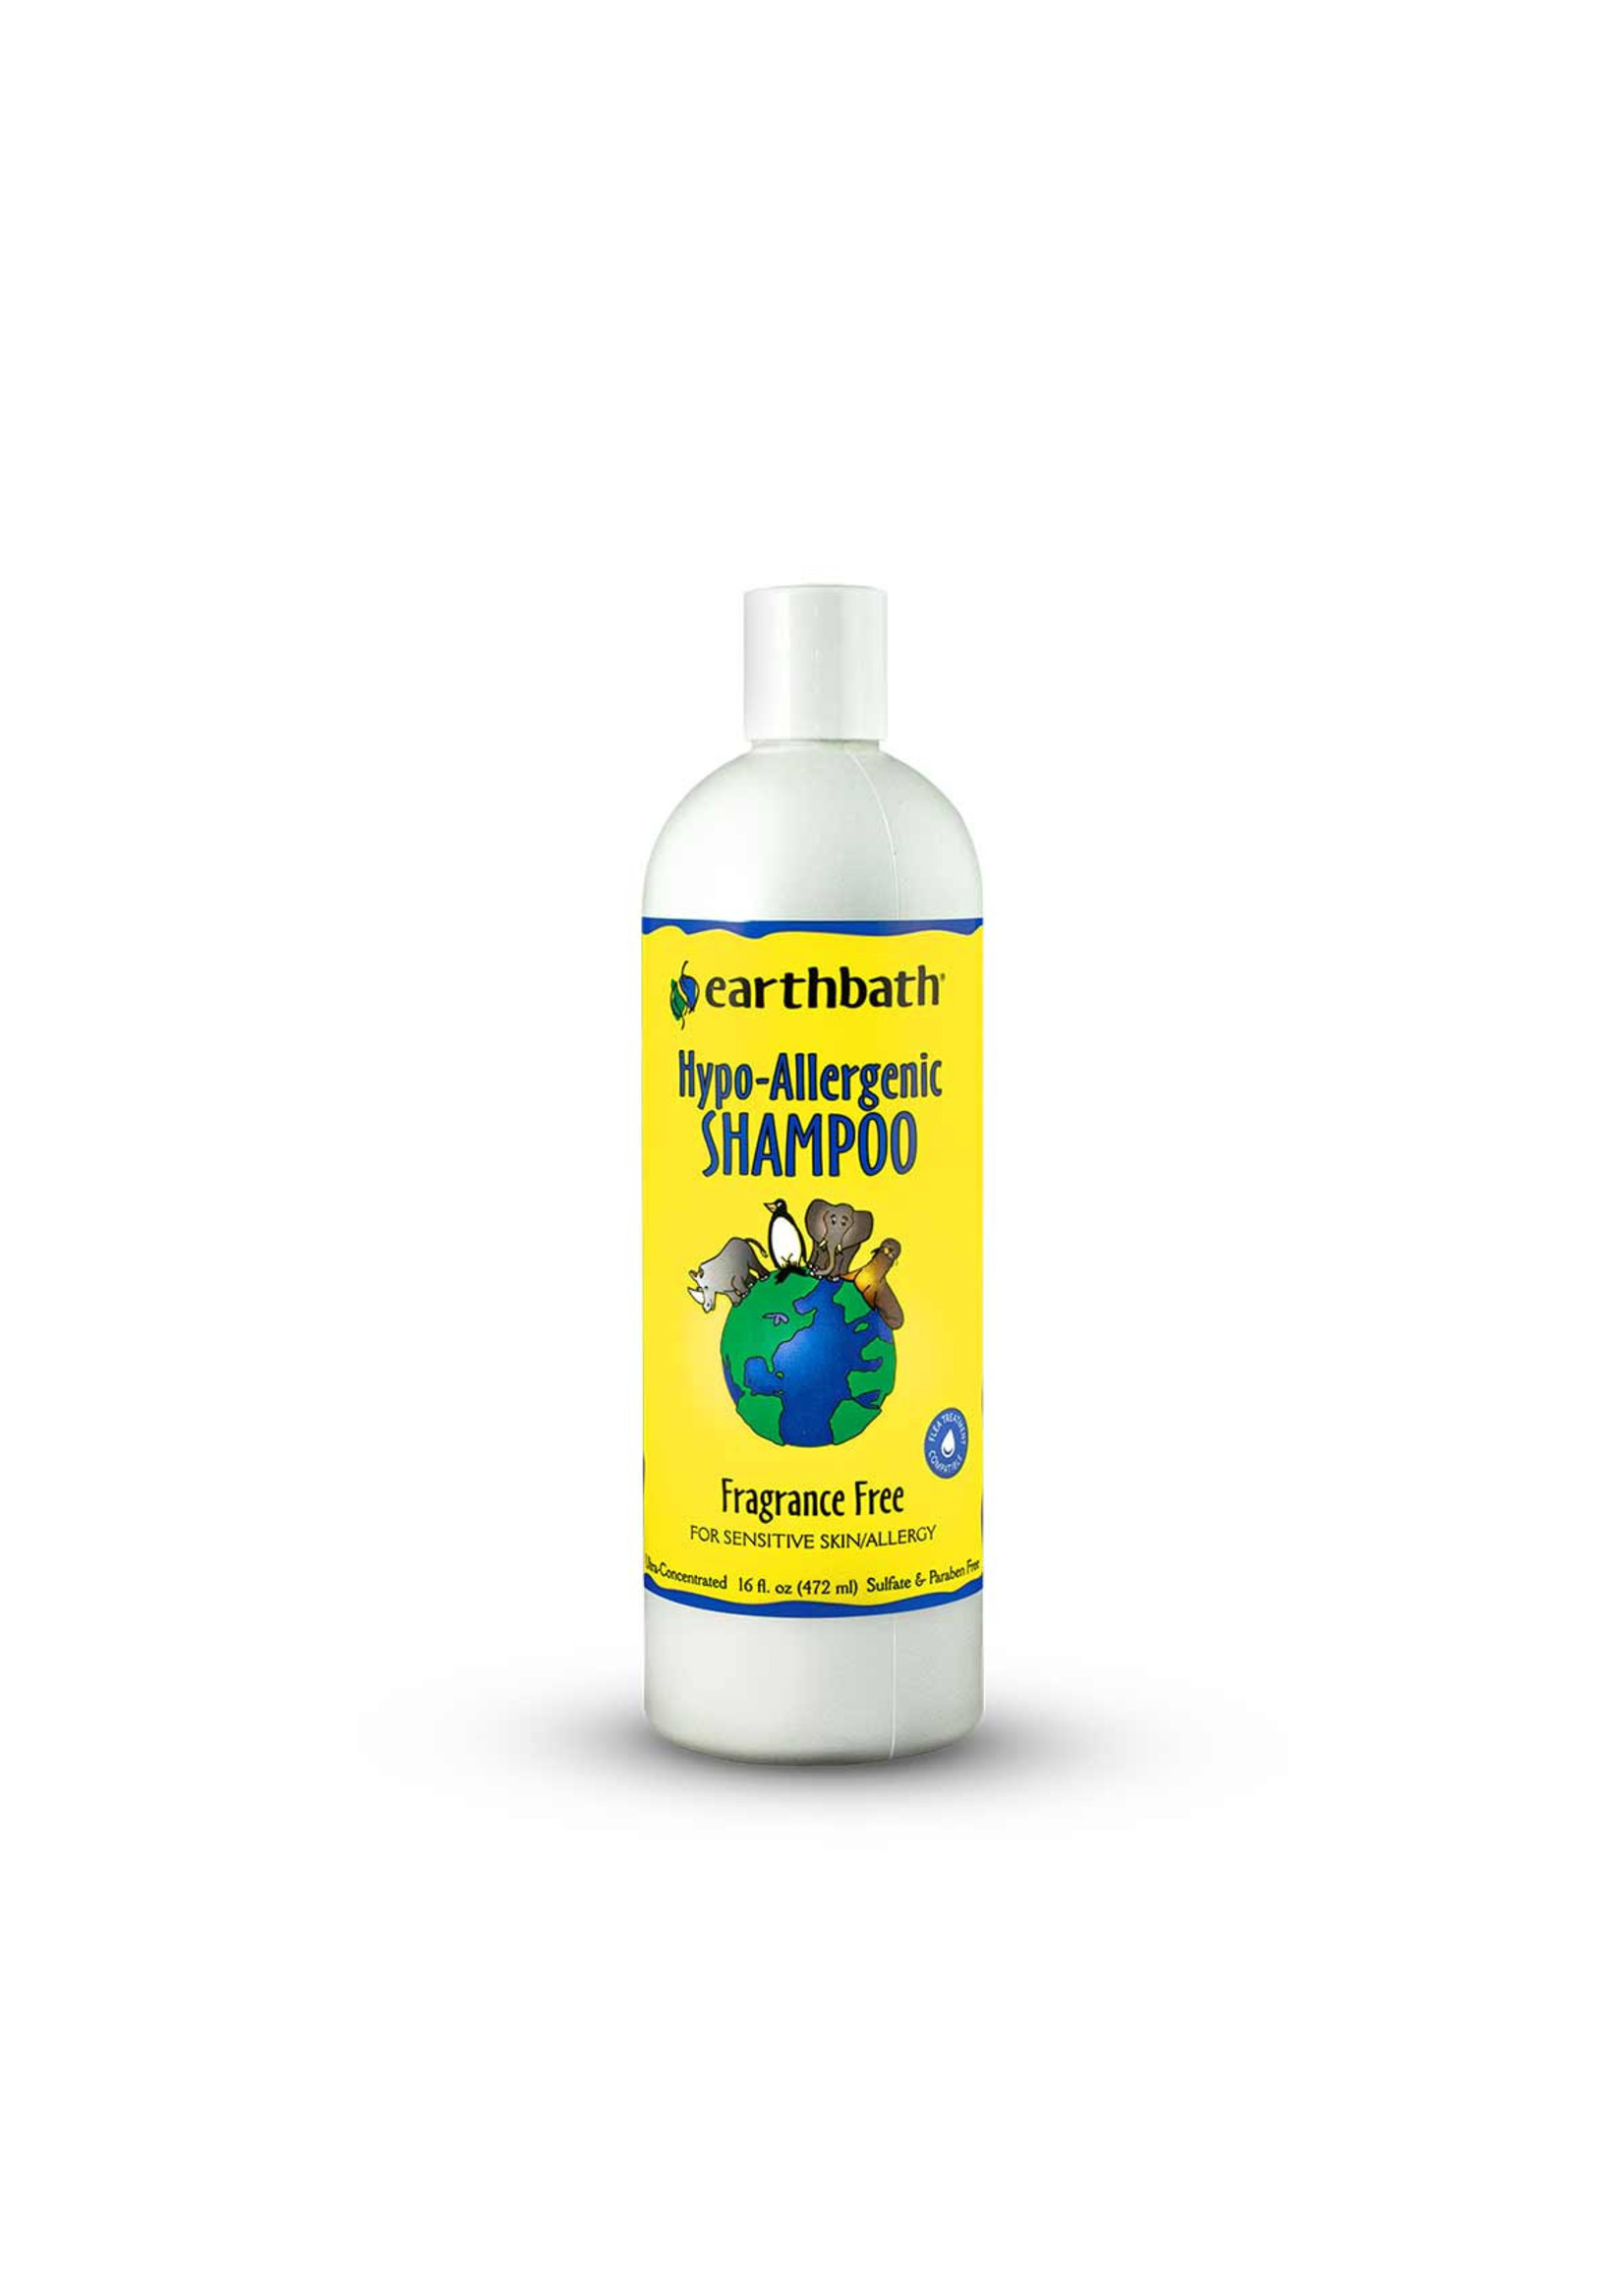 Earthbath Earthbath Hypo-Allergenic Shampoo Fragrance Free 1 Gallon